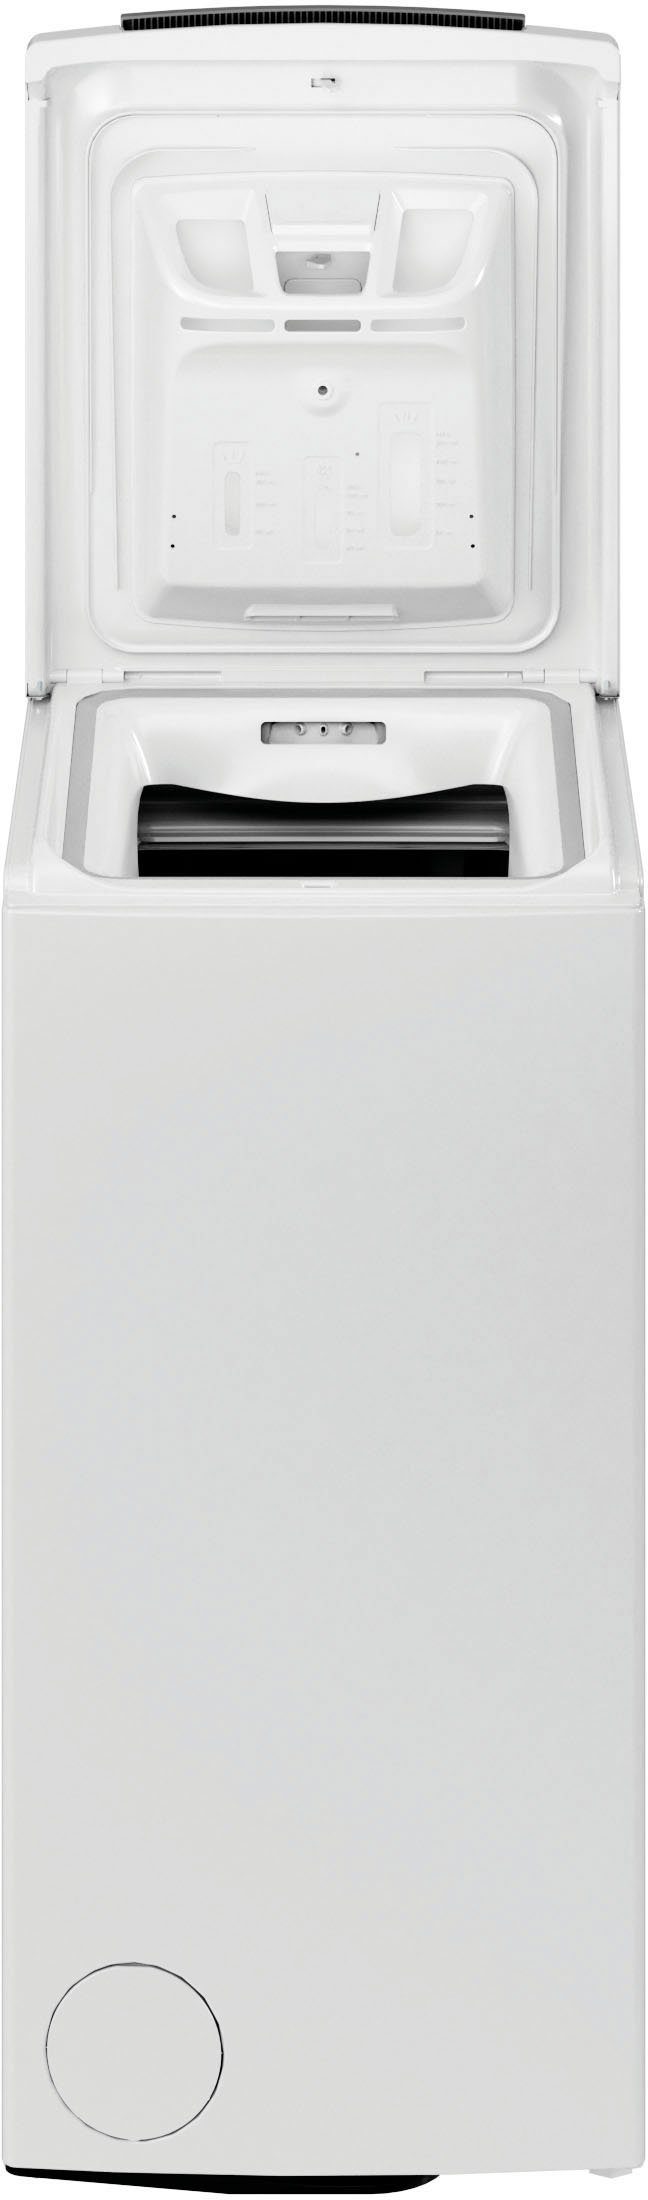 BAUKNECHT Waschmaschine 1200 Toplader 6 WMT 6ZB, Eco Pro kg, U/min